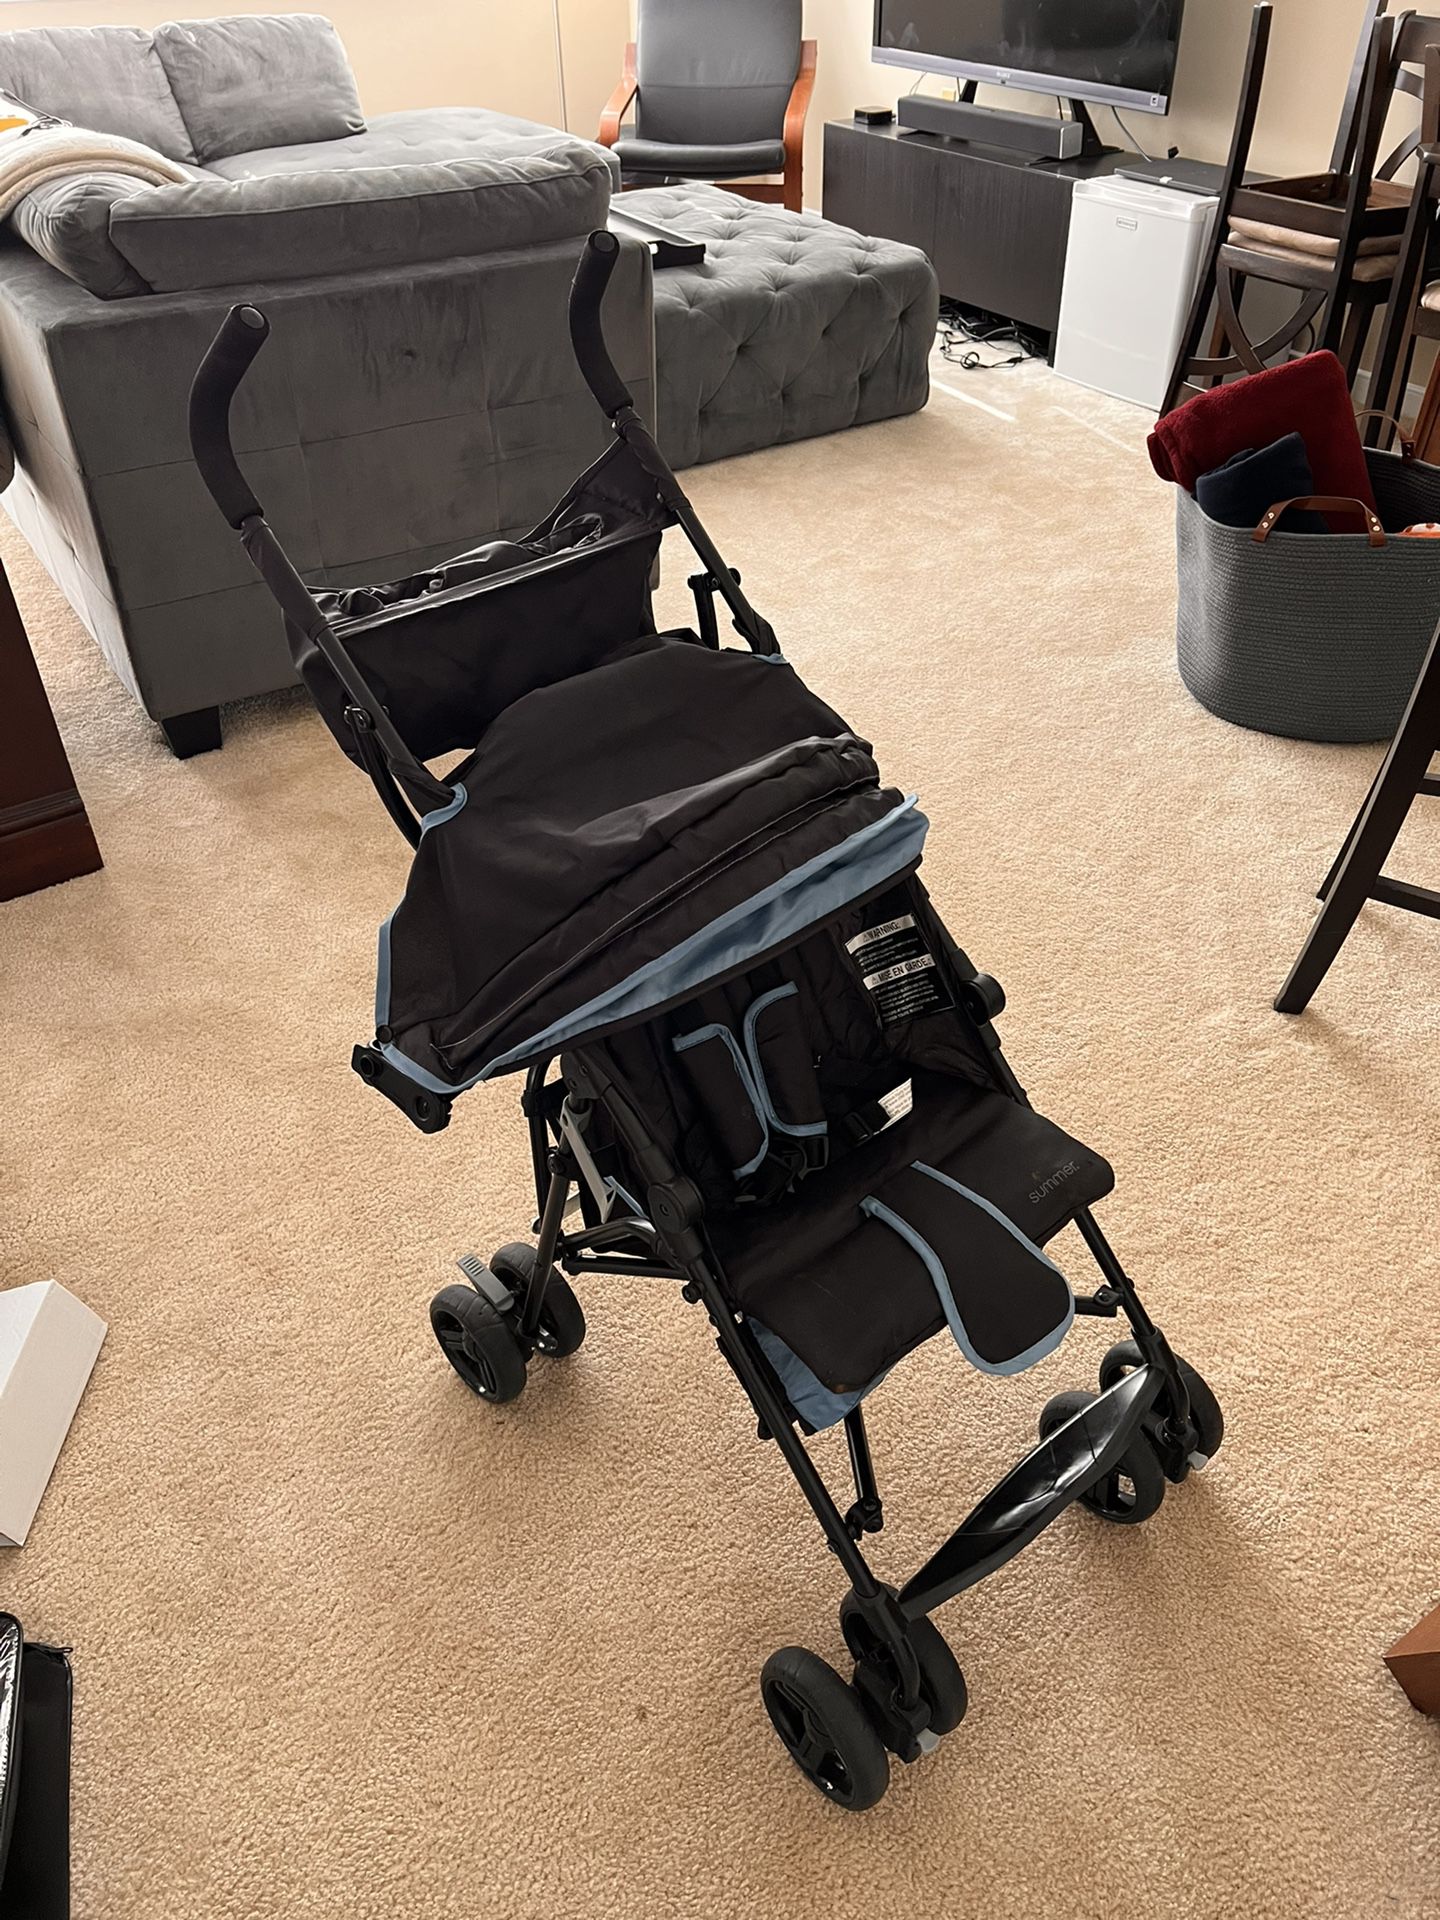 Baby Stroller No Longer Needed